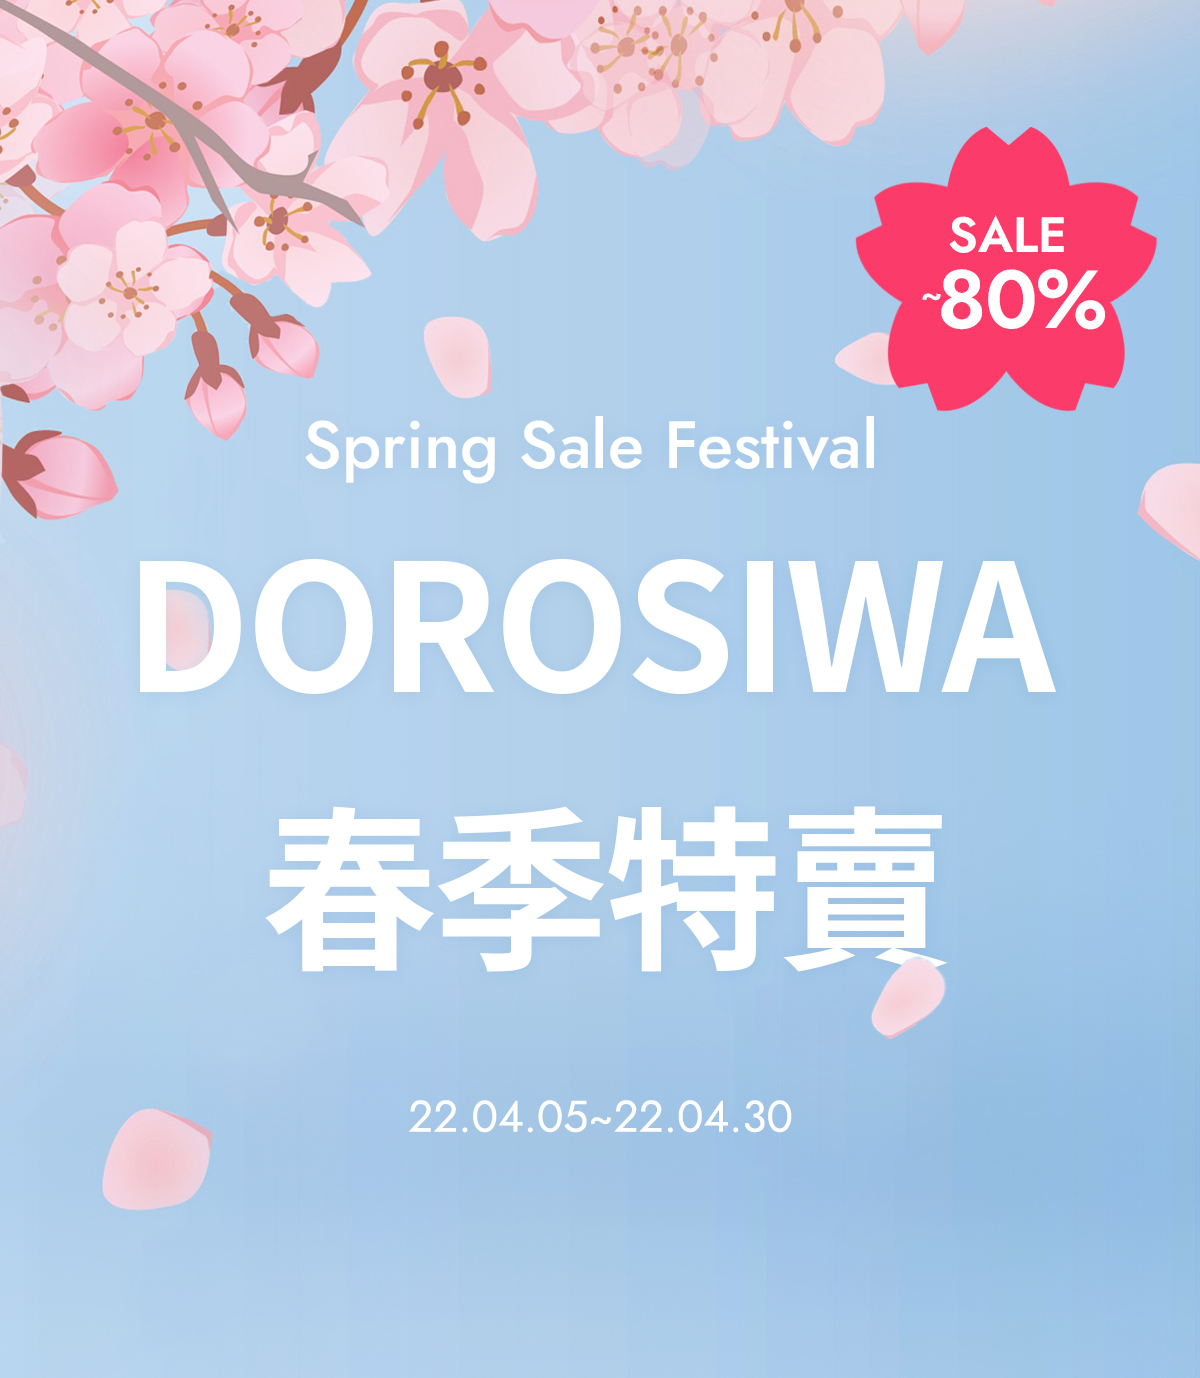 DOROSIWA 春季特賣會 最高享~80%超值折扣優惠